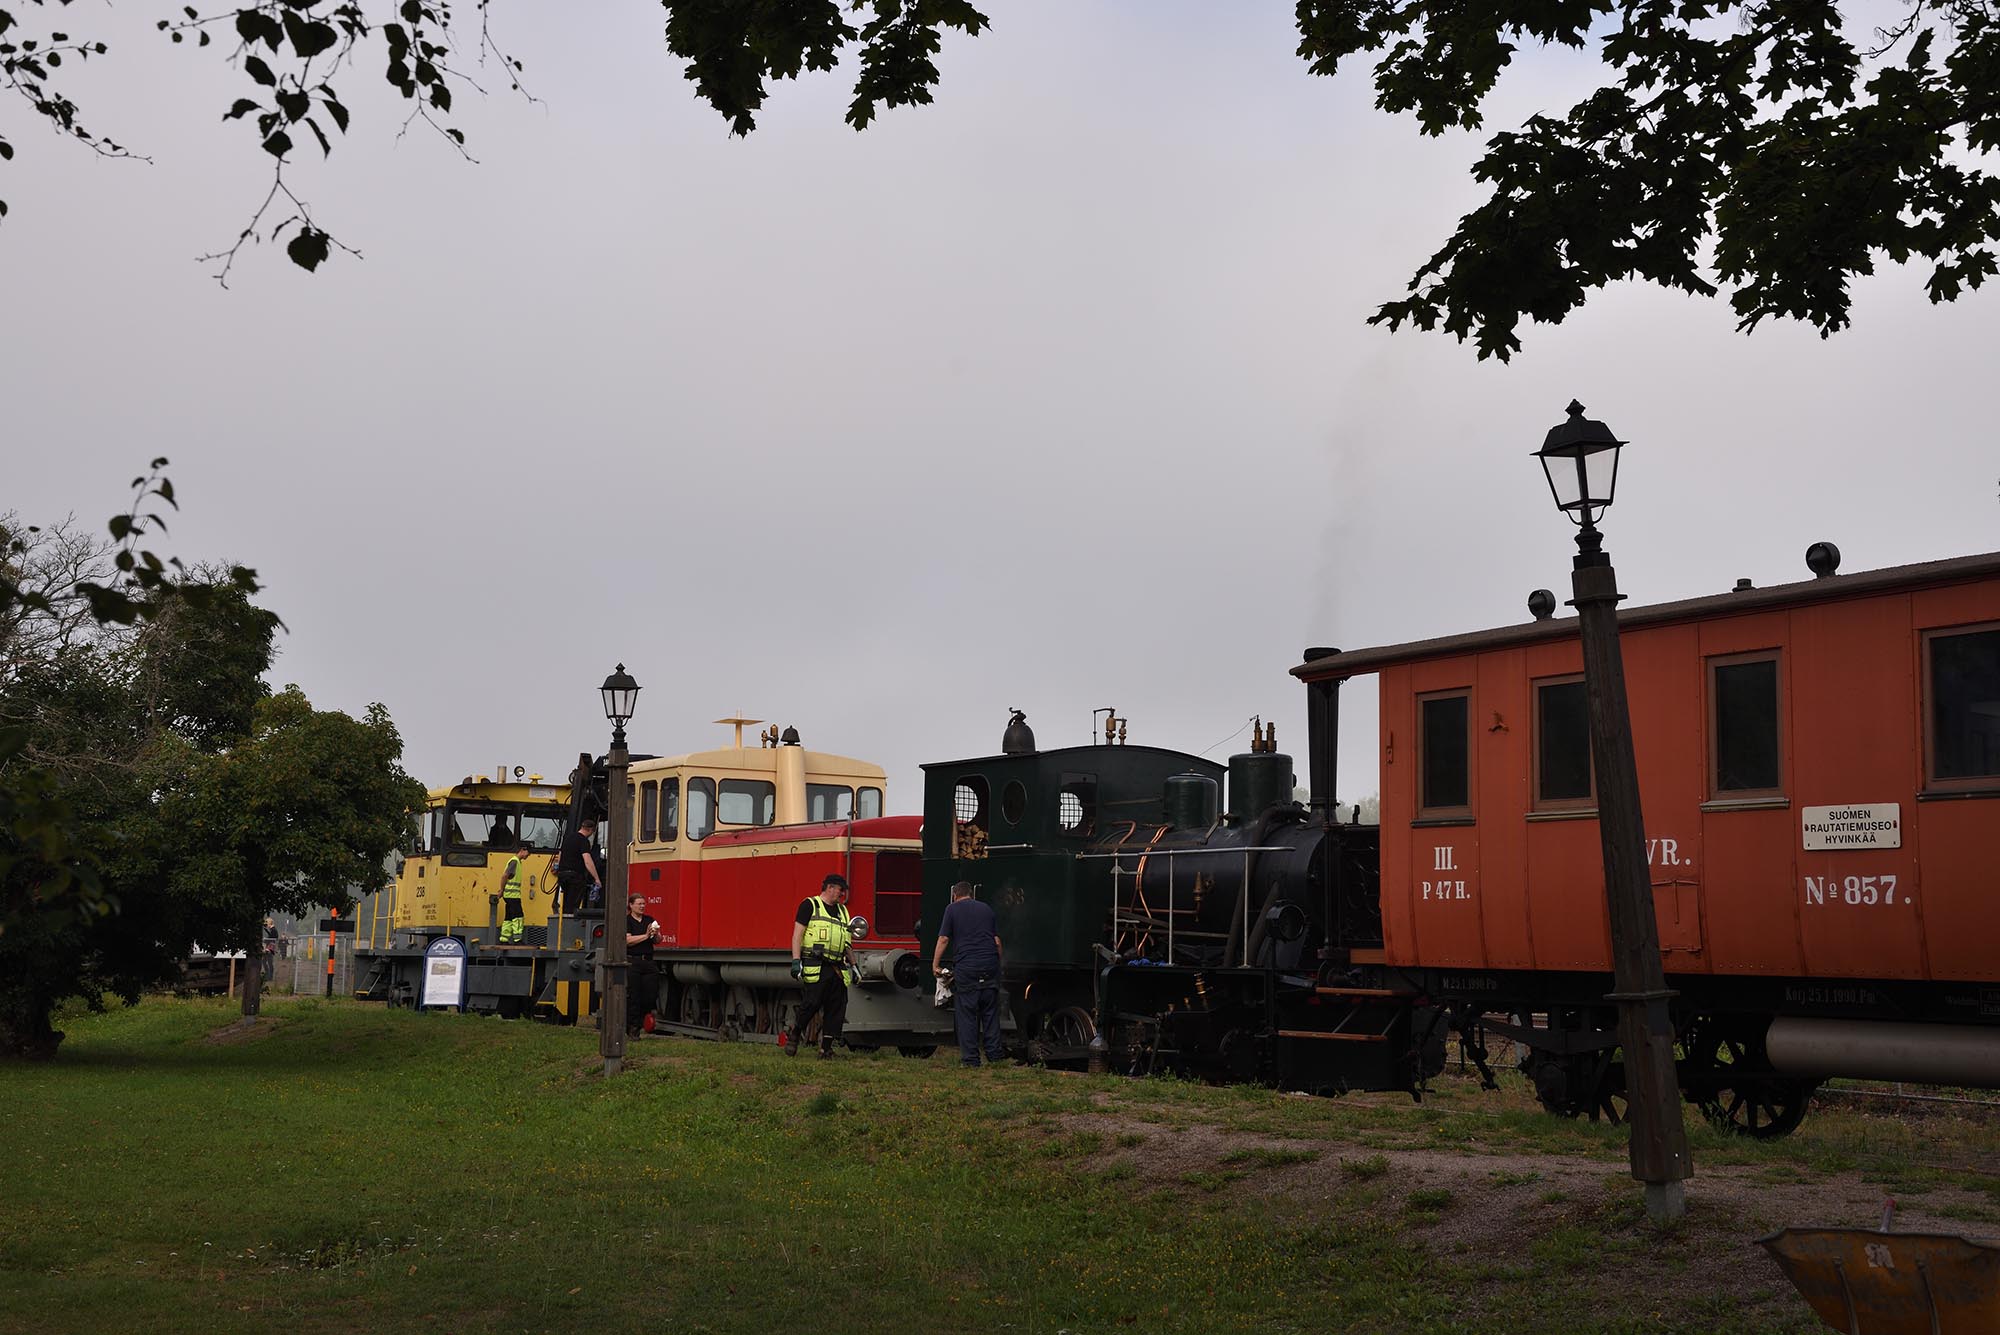 Rautatiemuseon vapaaehtoistyöntekijöitä vetureiden ja vaunujen luona museon raiteella.